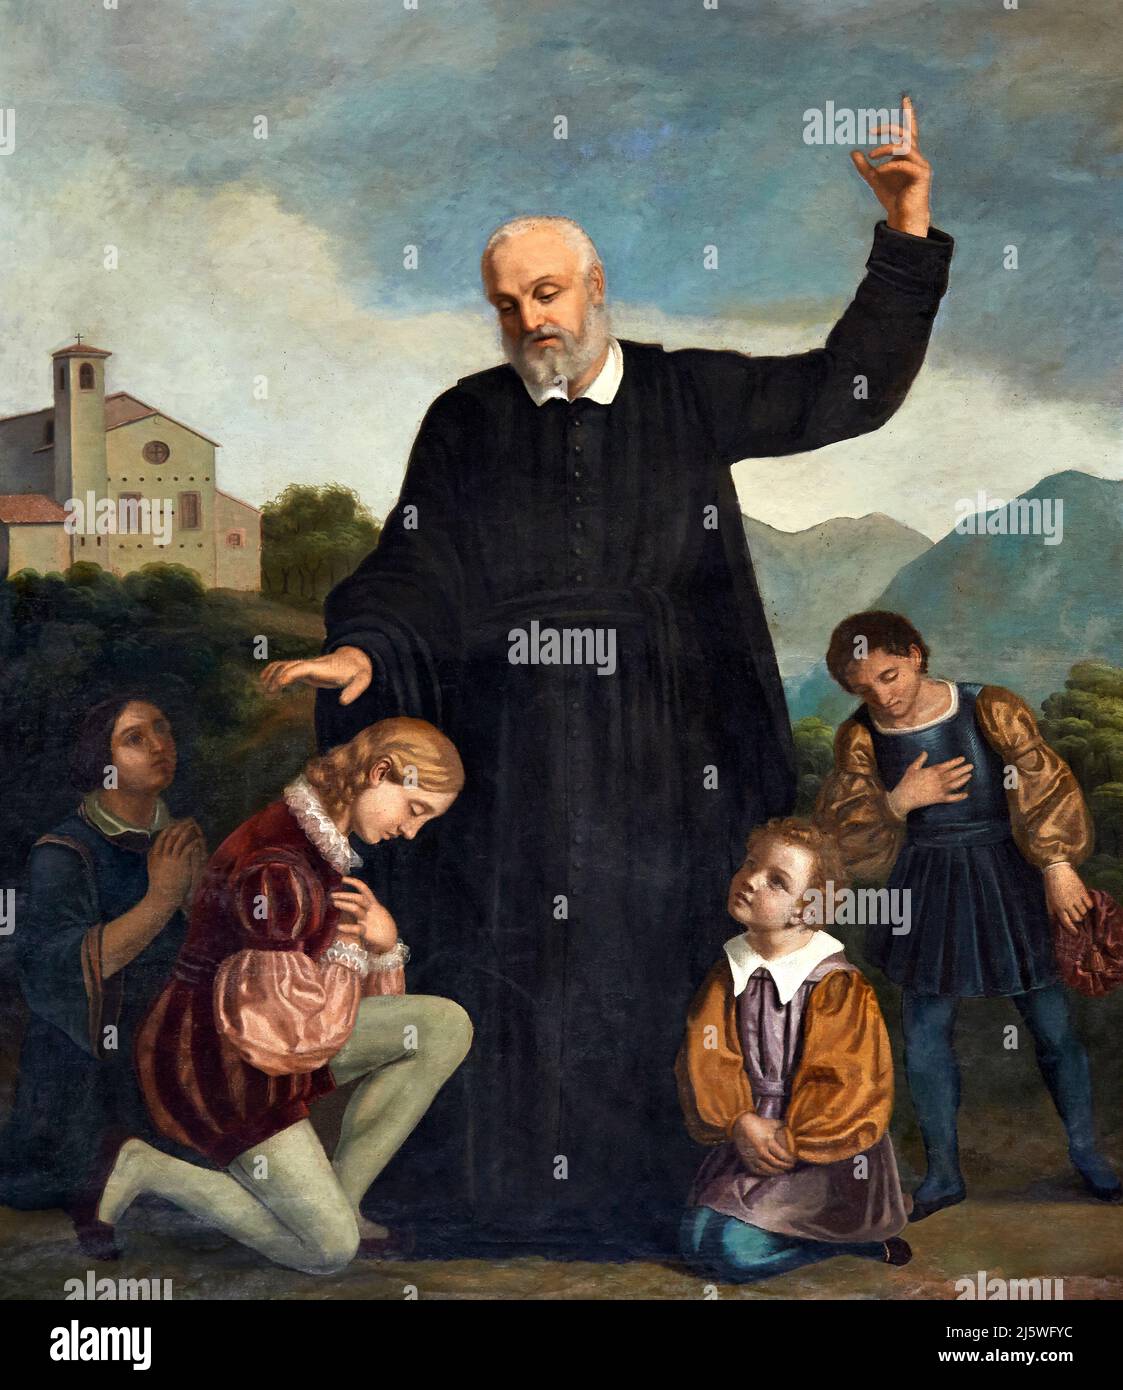 San Filippo Neri con i fanciulli - olio su tela - Filippo Brunelli - XIX secolo - Calino (Bs), Italia, chiesa parrocchiale di S. Michele Arcangelo Stockfoto